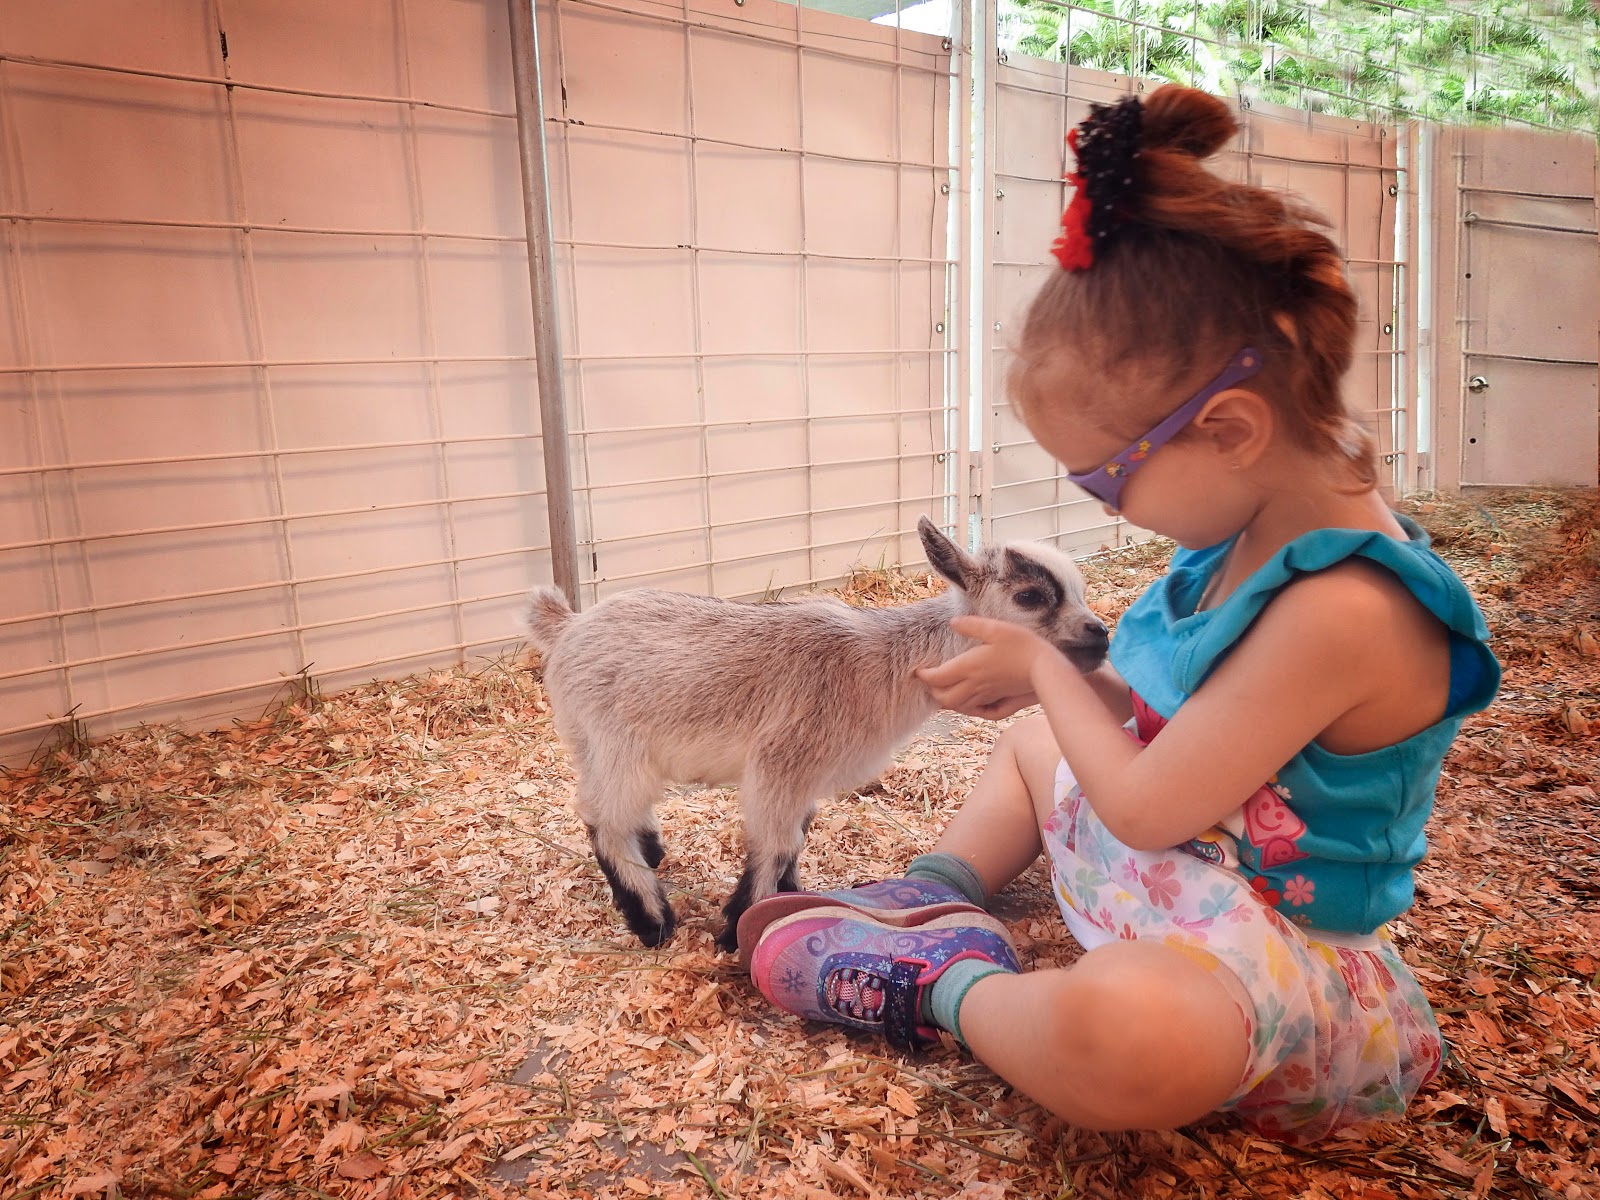 bond between animals and kids